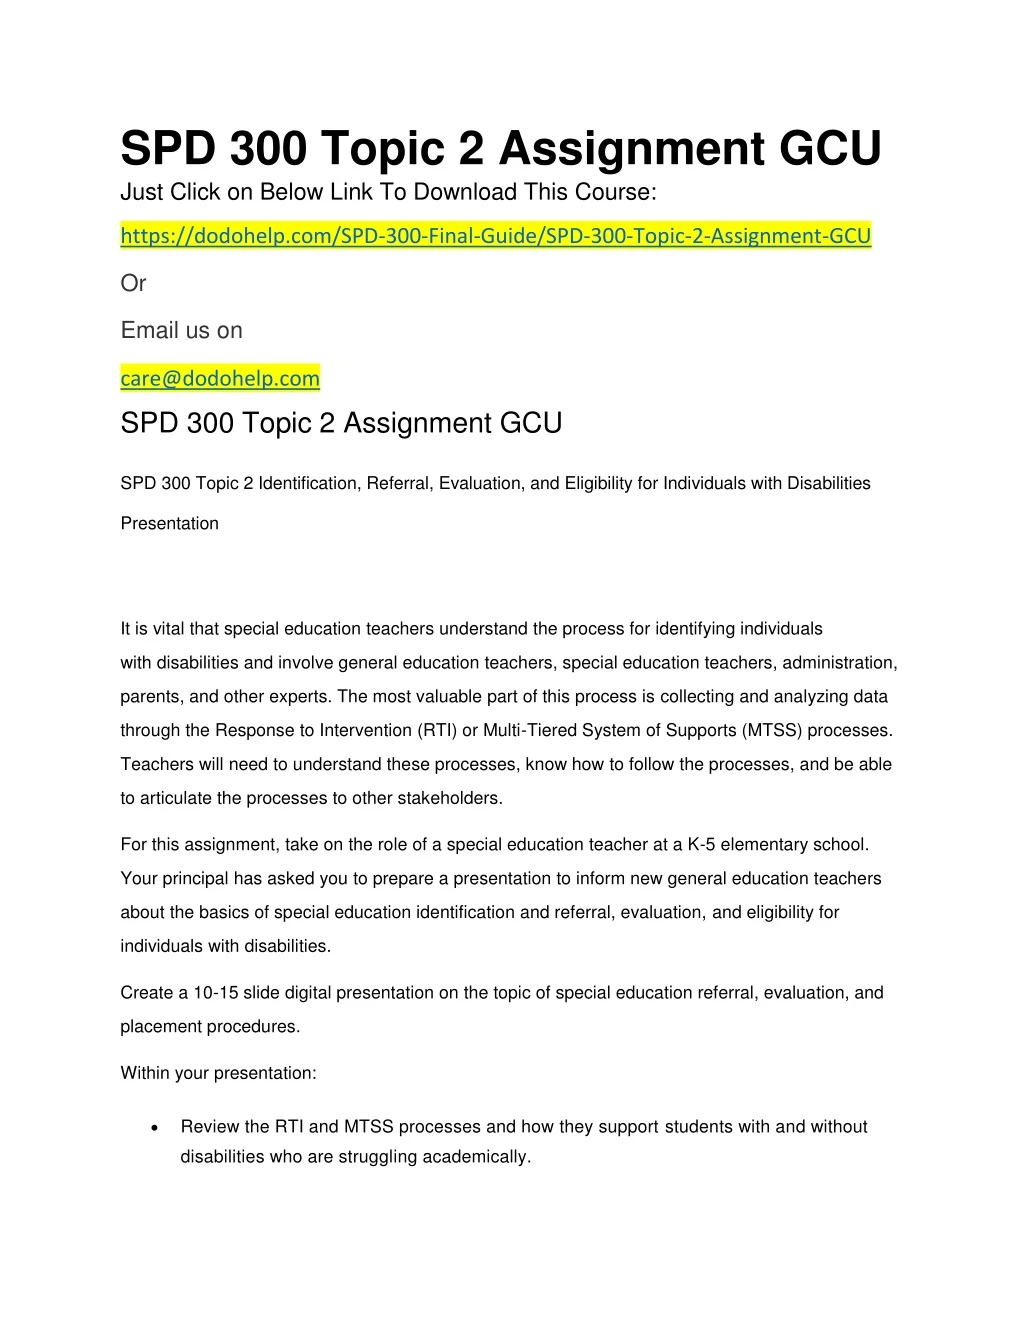 spd 300 topic 2 assignment gcu just click